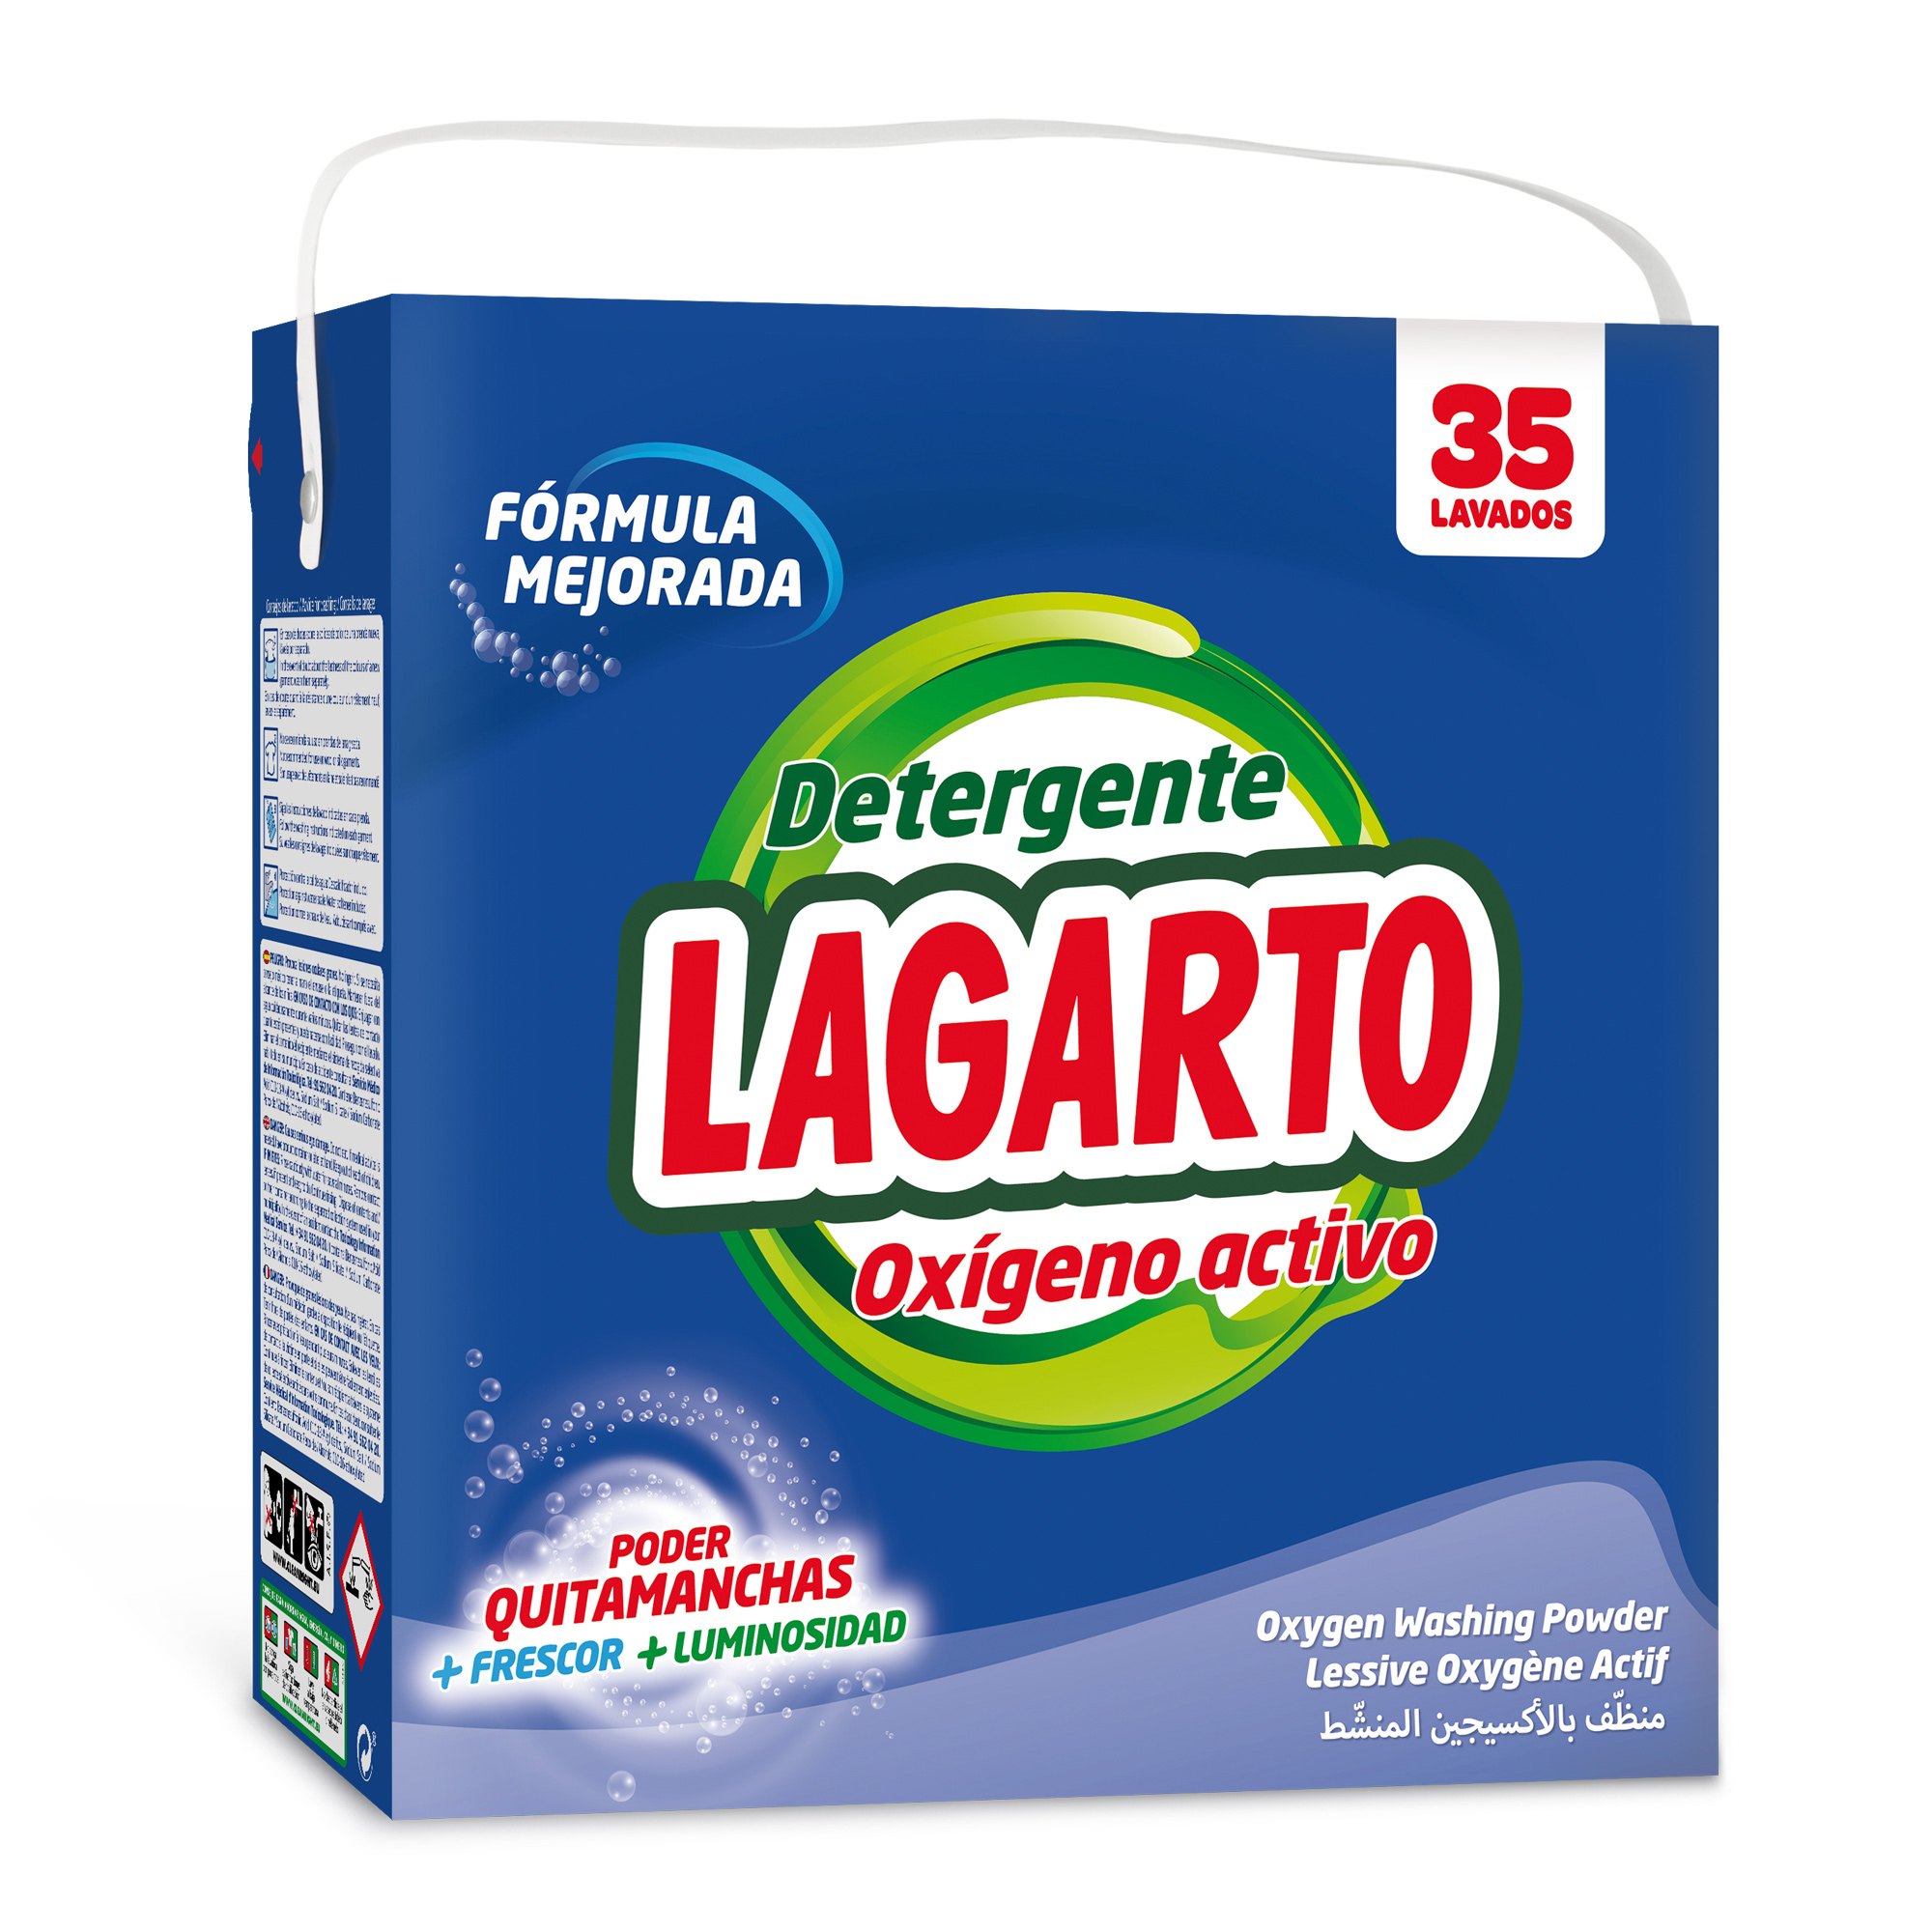 Detergente Lagarto Oxígeno Activo 35 Lavados